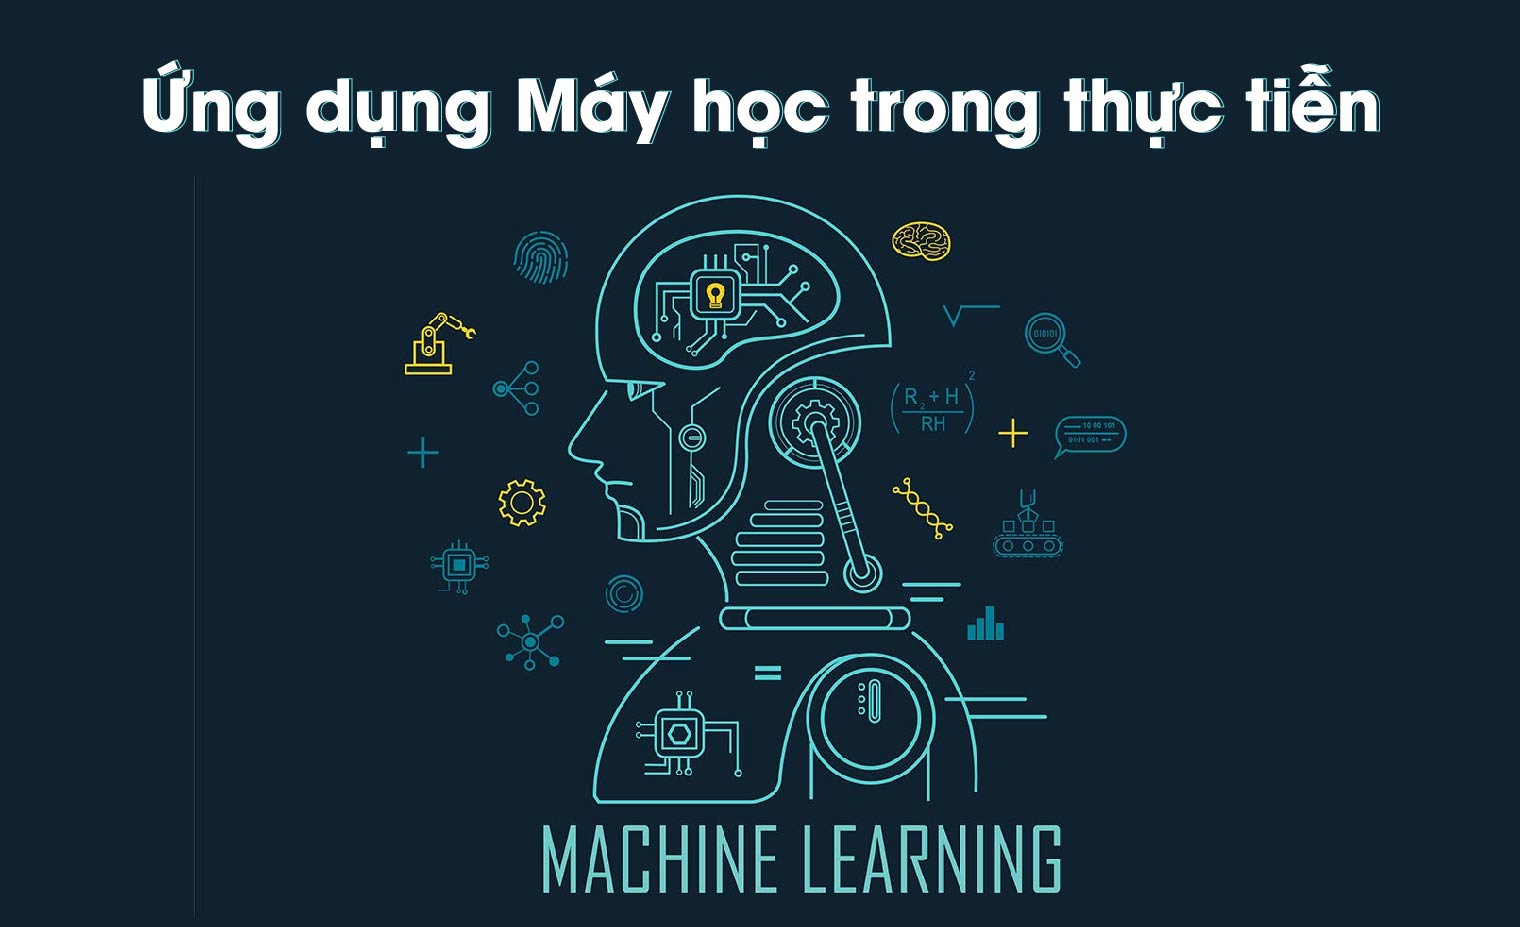 12 ứng dụng máy học (Machine learning) hàng đầu trong thực tiễn